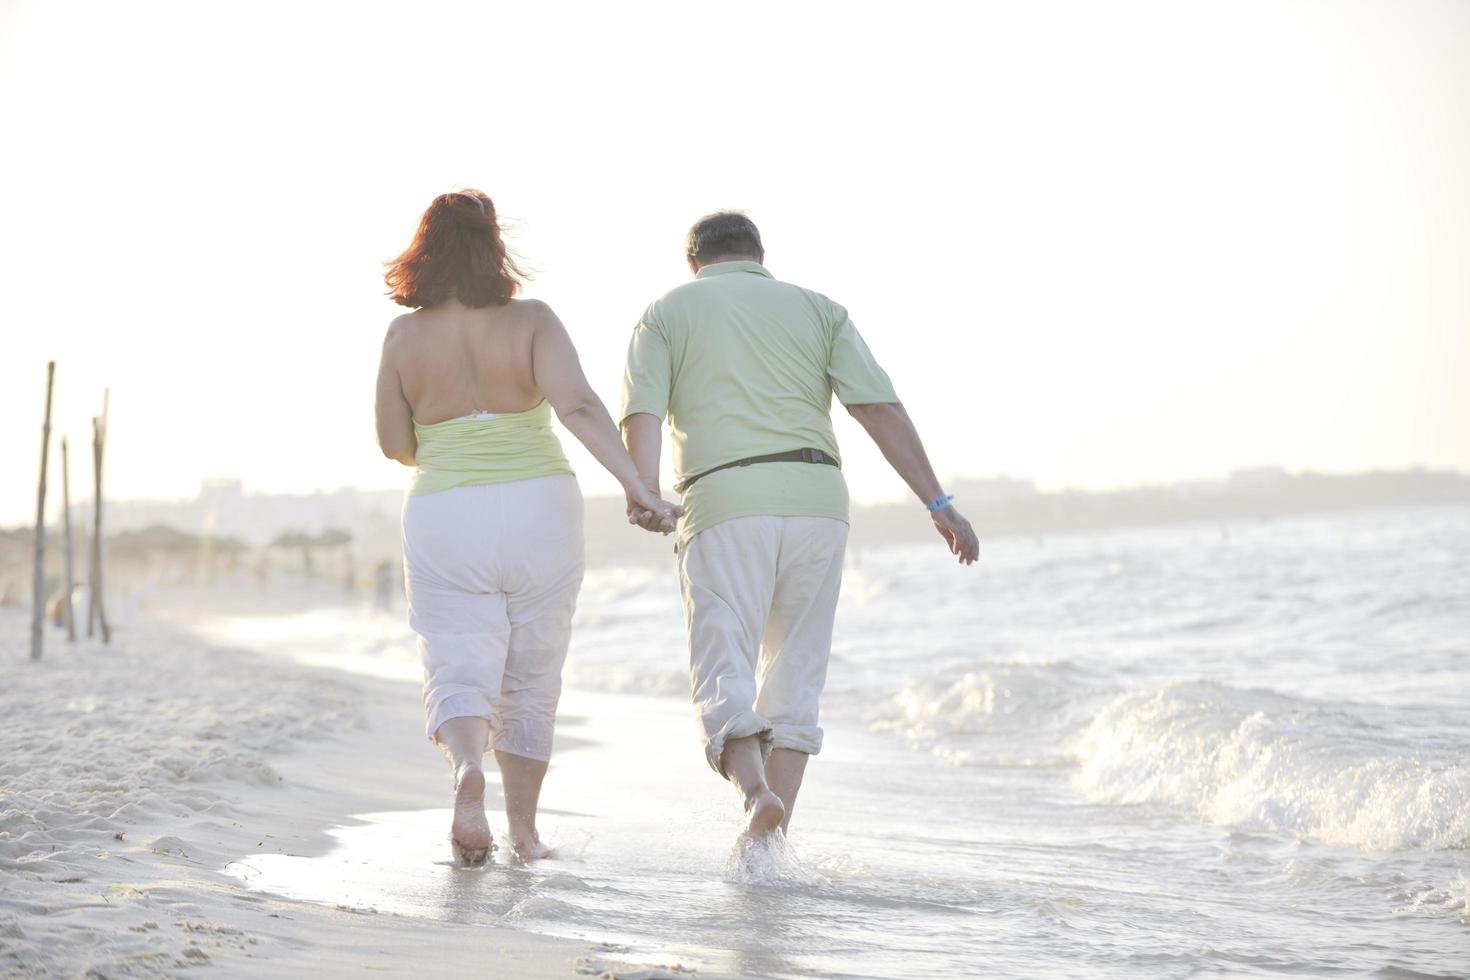 casal de idosos feliz na praia foto